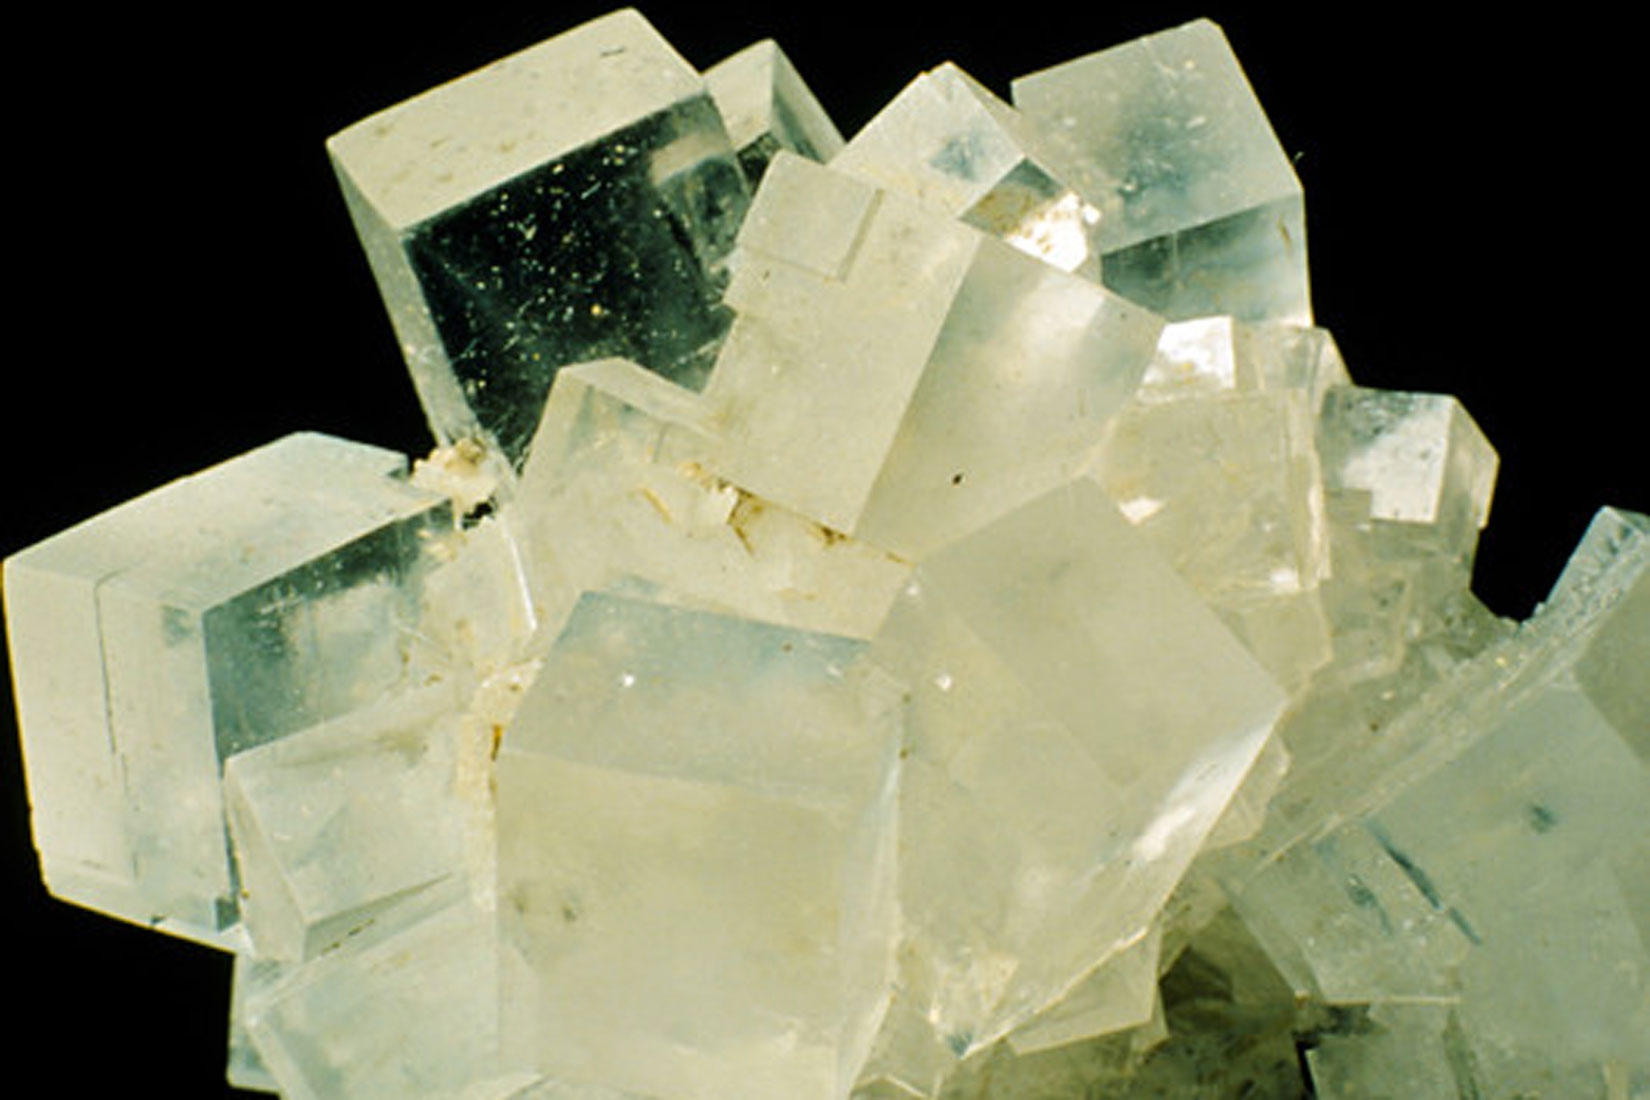 Fotografija prikazuje halit, kamenu sol.Prikazani su kristali koji su prozirno-bjelkasti.